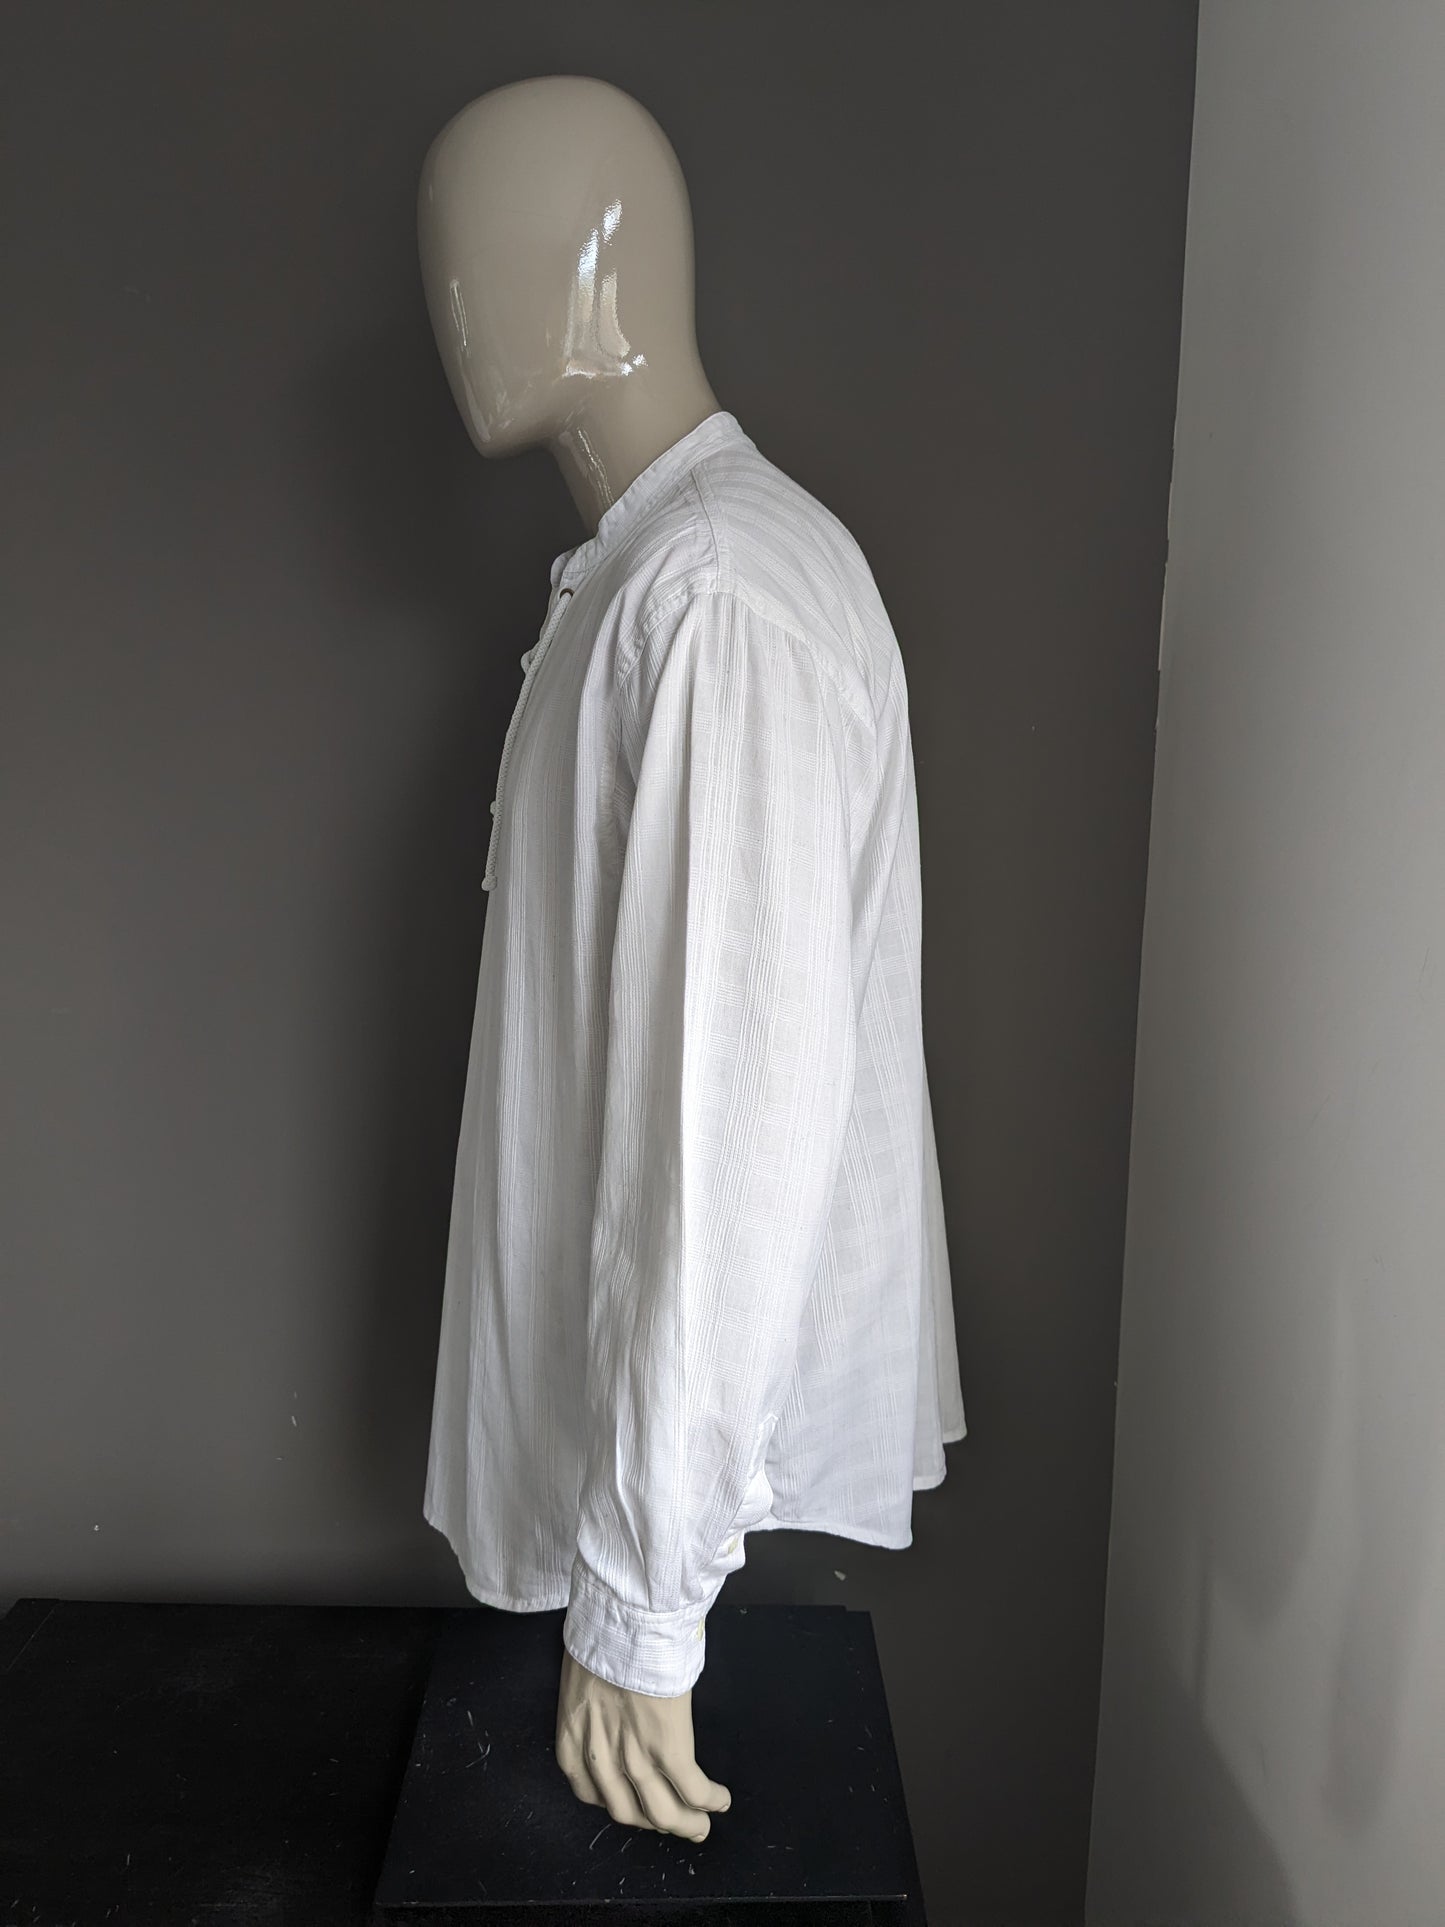 Camisa Vintage Gaucho Company con aplicación de veteranos y MAO / agricultores / cuello en pie. Motivo blanco. Tamaño L / XL.